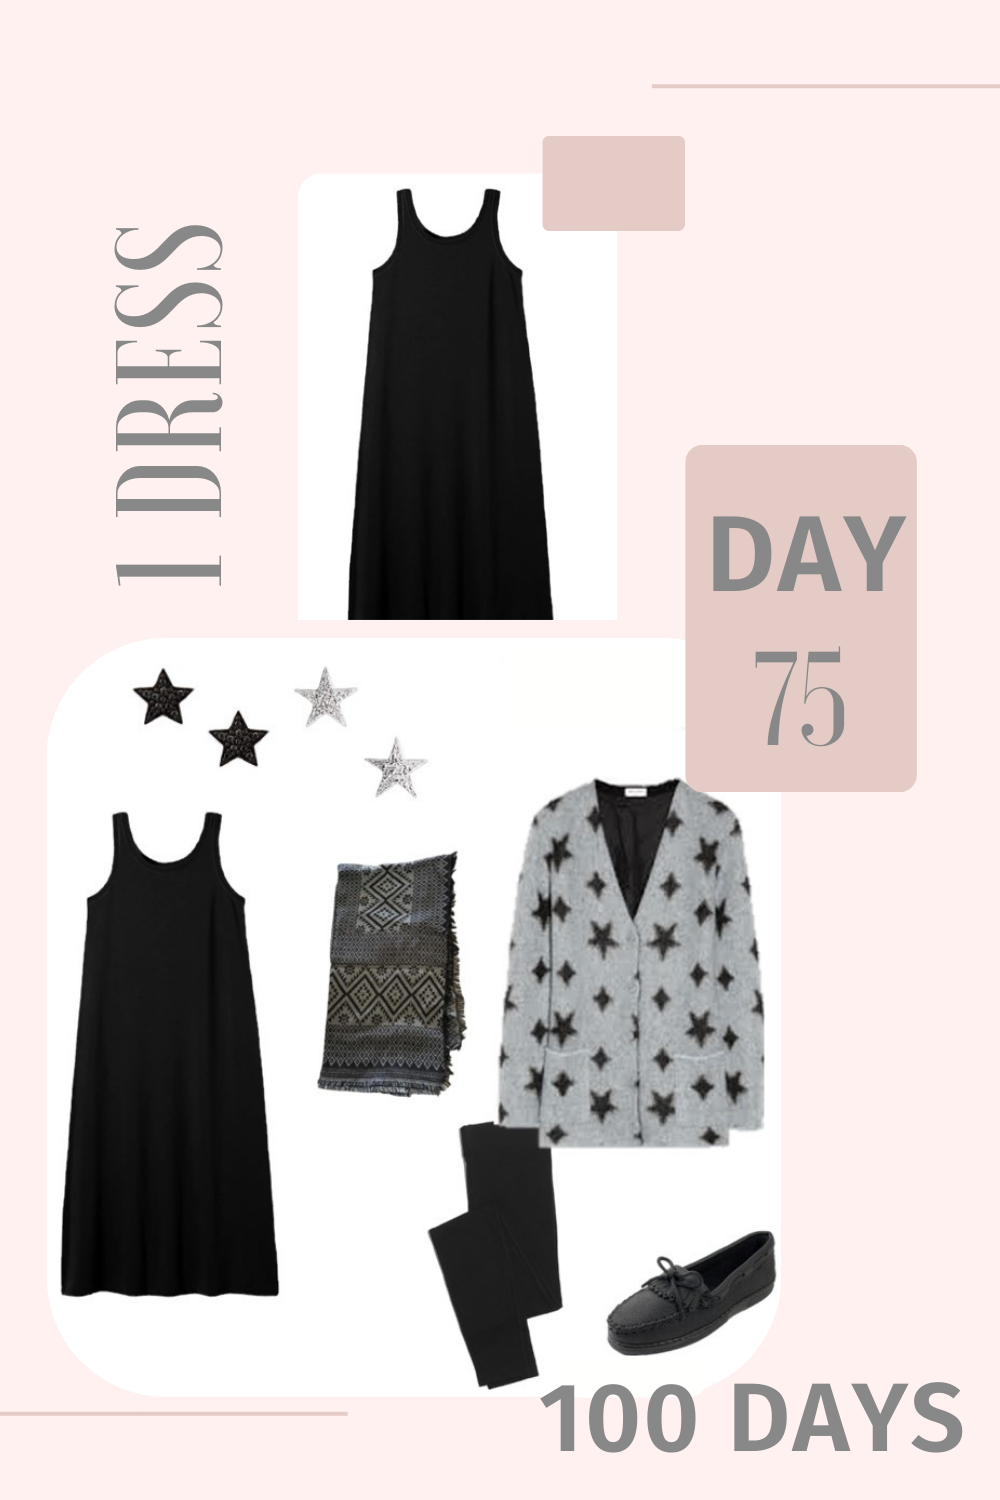 1 Dress 100 Days - Day 75